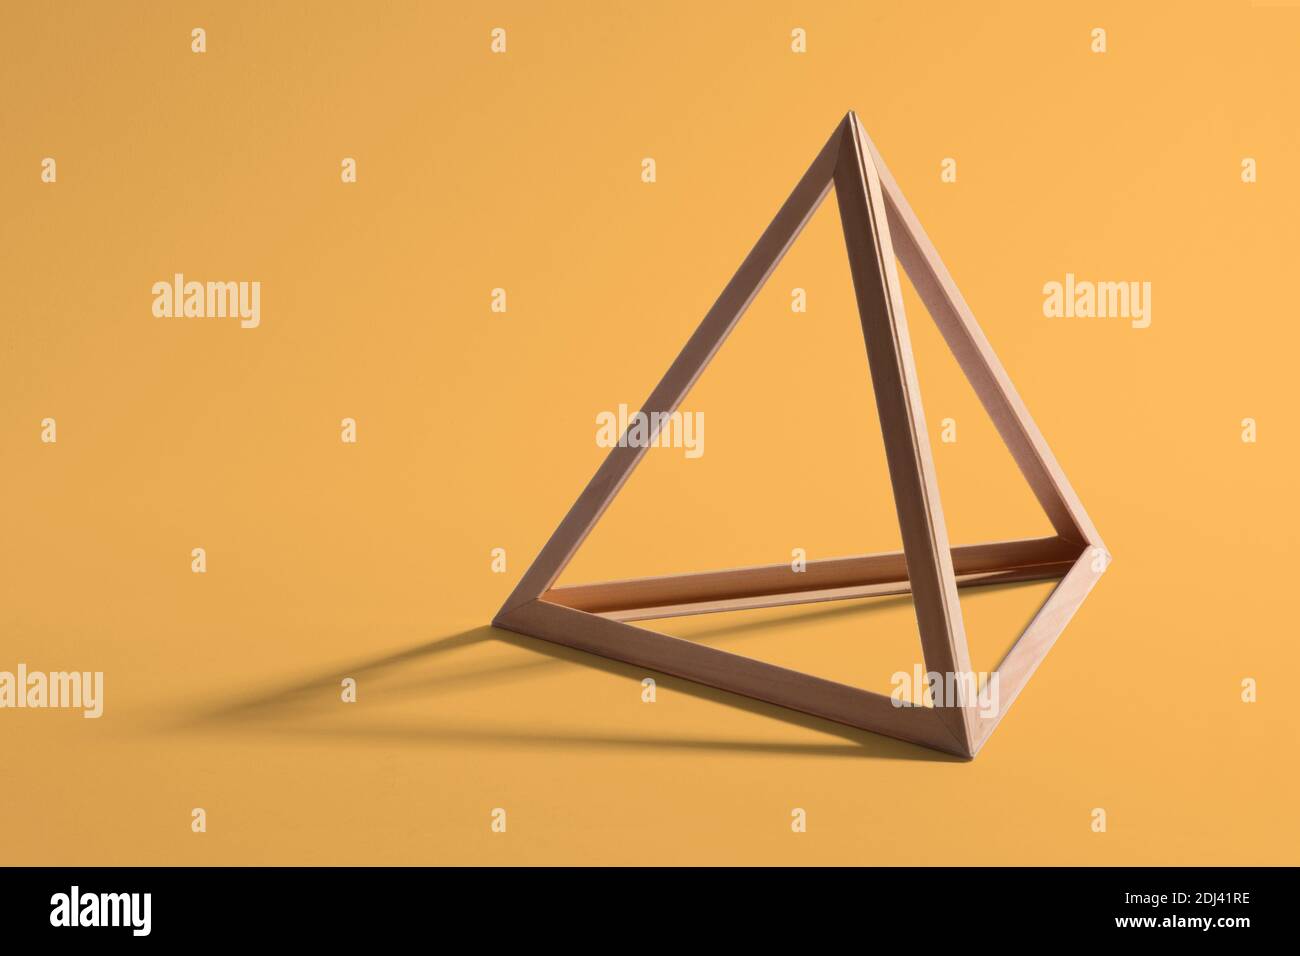 Ouvrir un cadre triangulaire en bois vide ou une forme pyramidale formant un triangle géométrique standard qui forme une ombre sur un fond jaune Banque D'Images